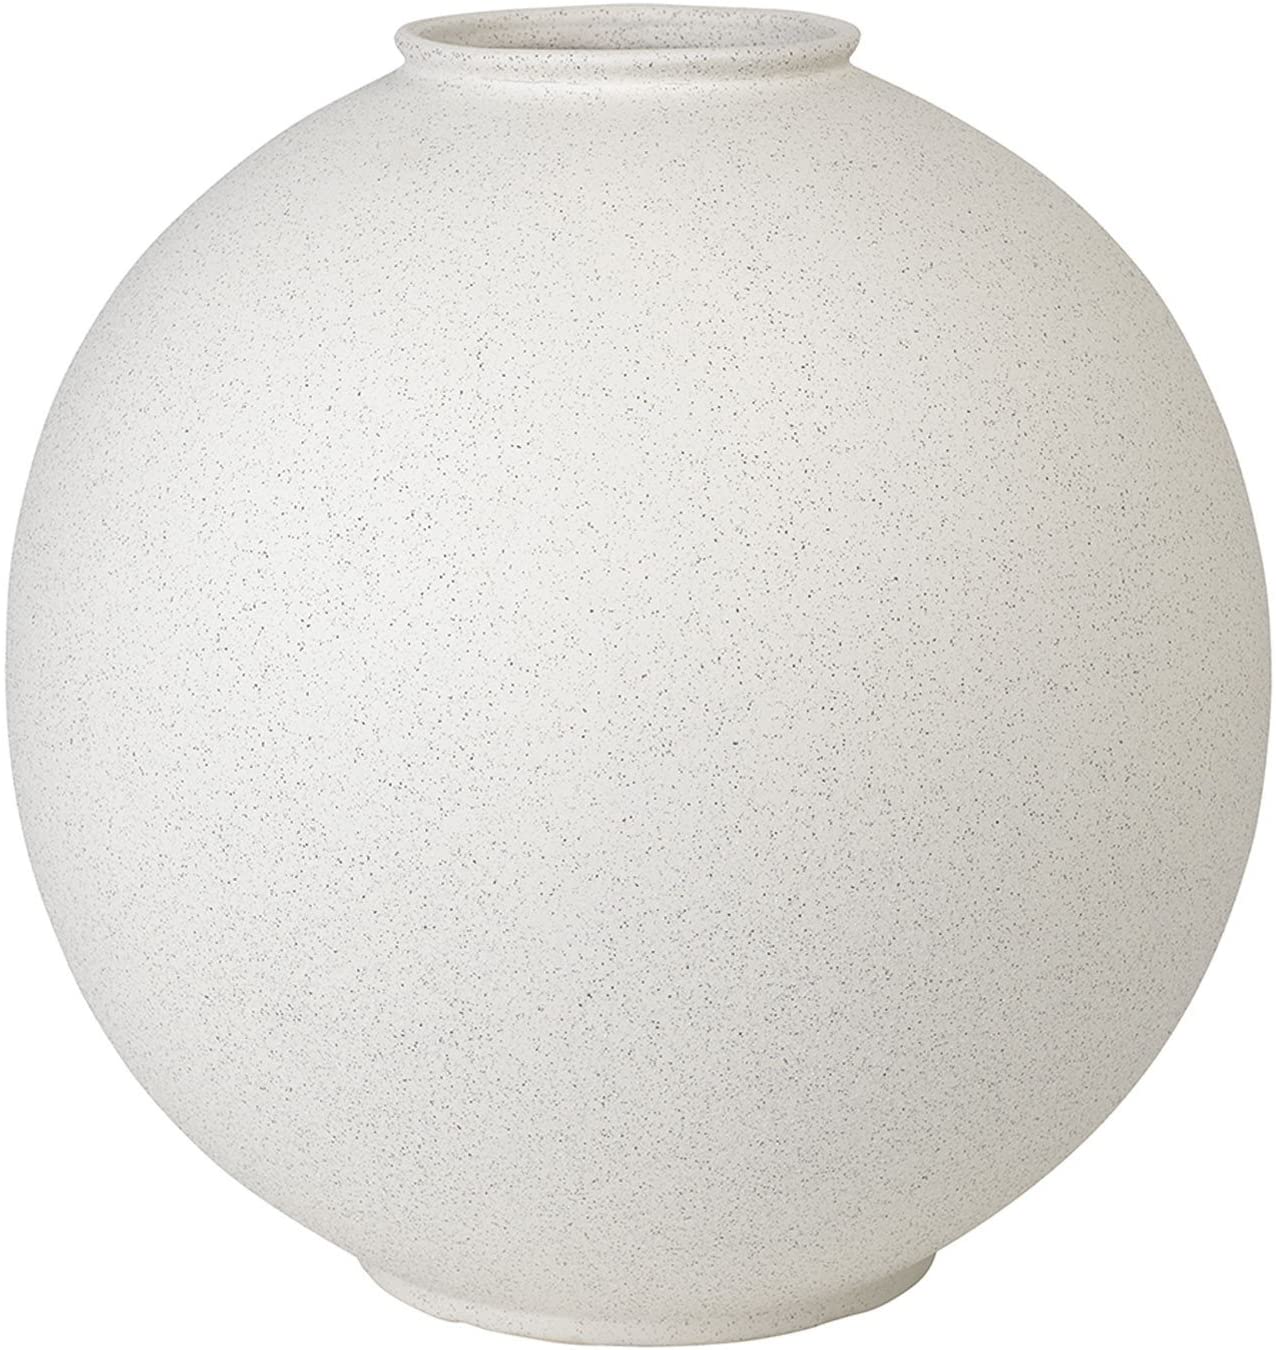 Blomus 65727 Rudea Lily White Ceramic Vase Height 17.5 cm Diameter 16.5 cm